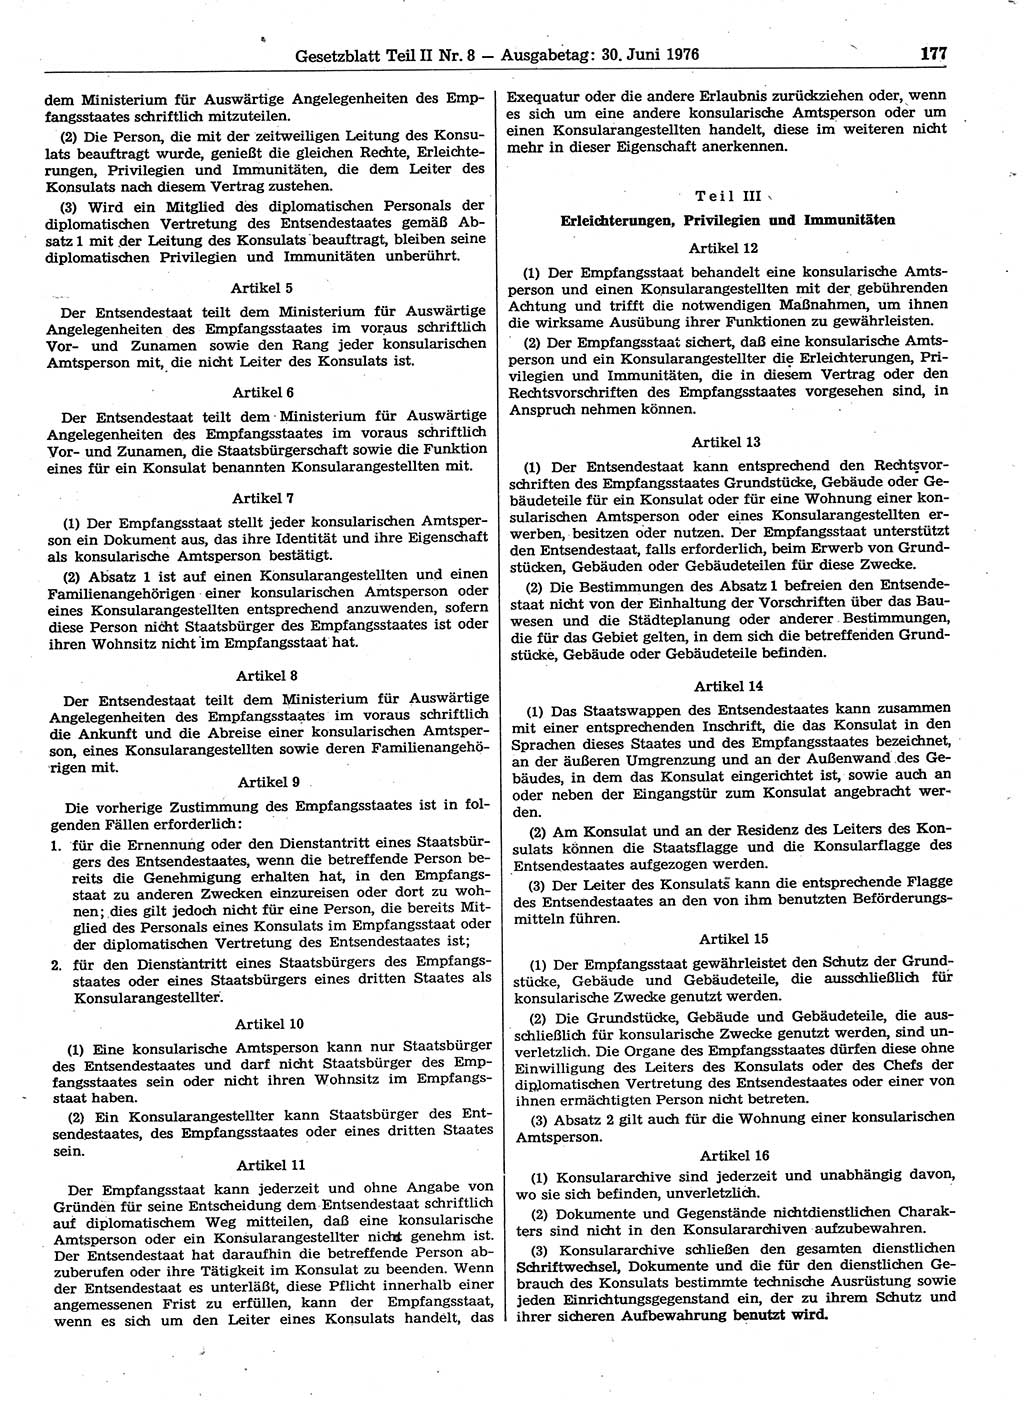 Gesetzblatt (GBl.) der Deutschen Demokratischen Republik (DDR) Teil ⅠⅠ 1976, Seite 177 (GBl. DDR ⅠⅠ 1976, S. 177)